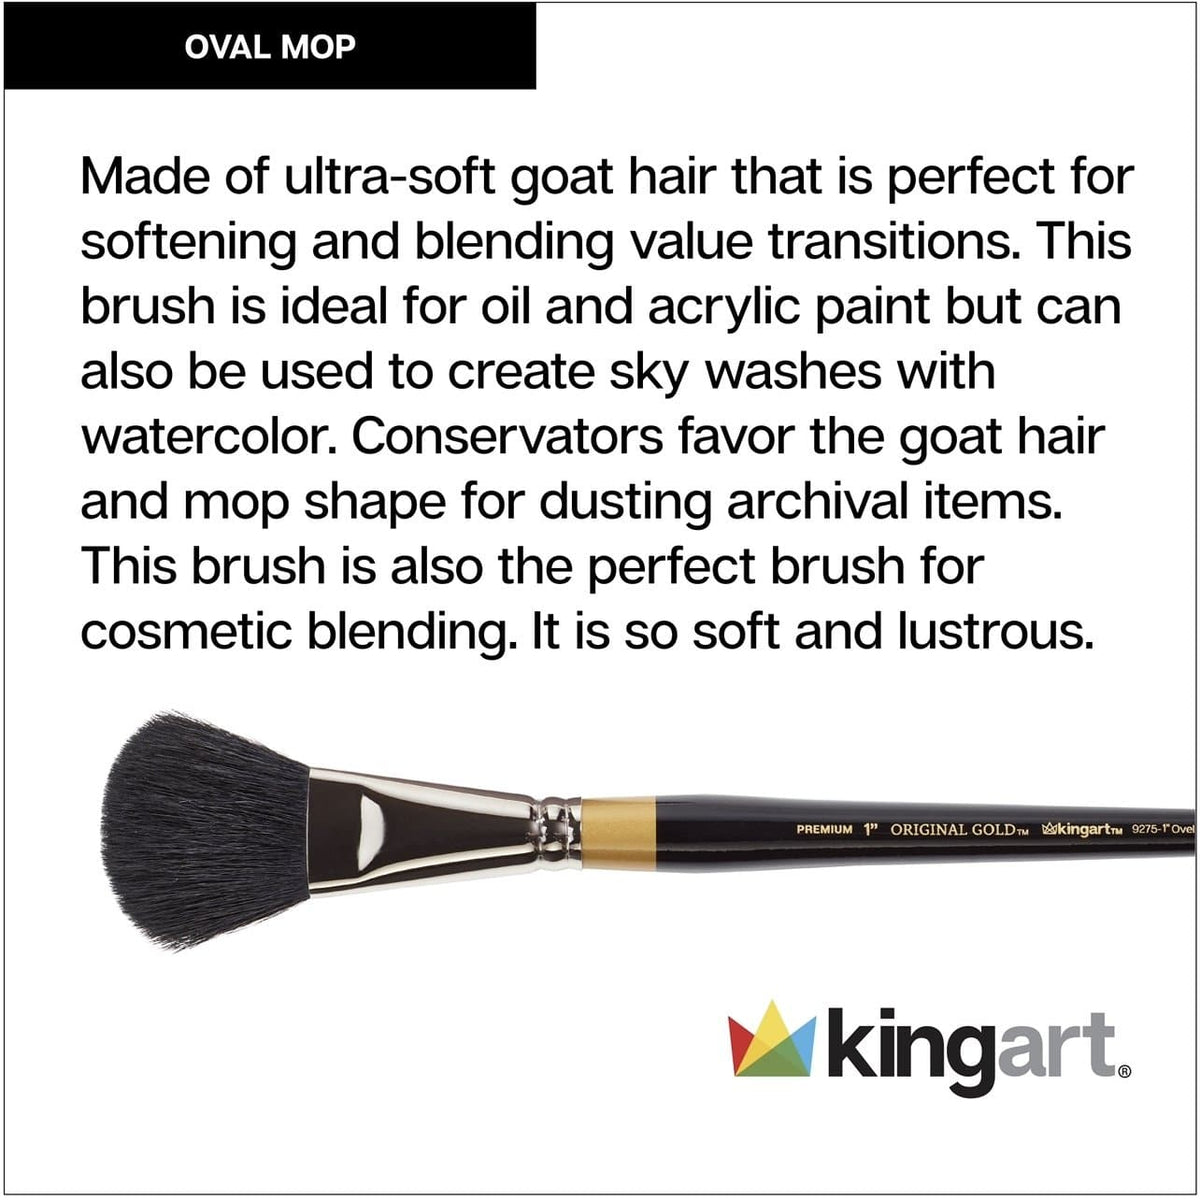 KINGART® Original Gold® 9275 Oval Mop Super Soft Dyed Black